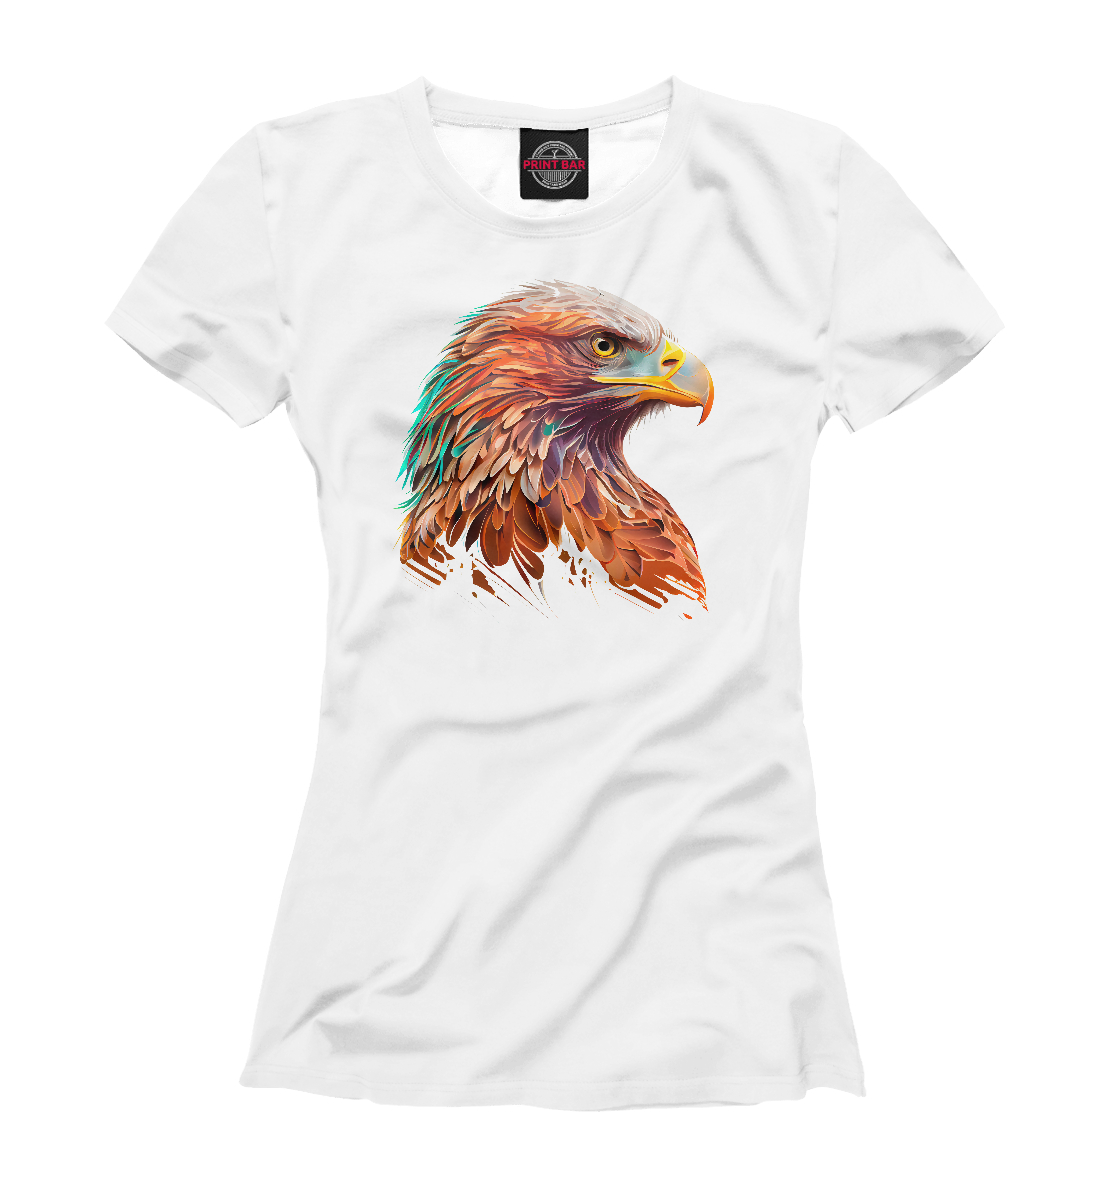 орел на футболках